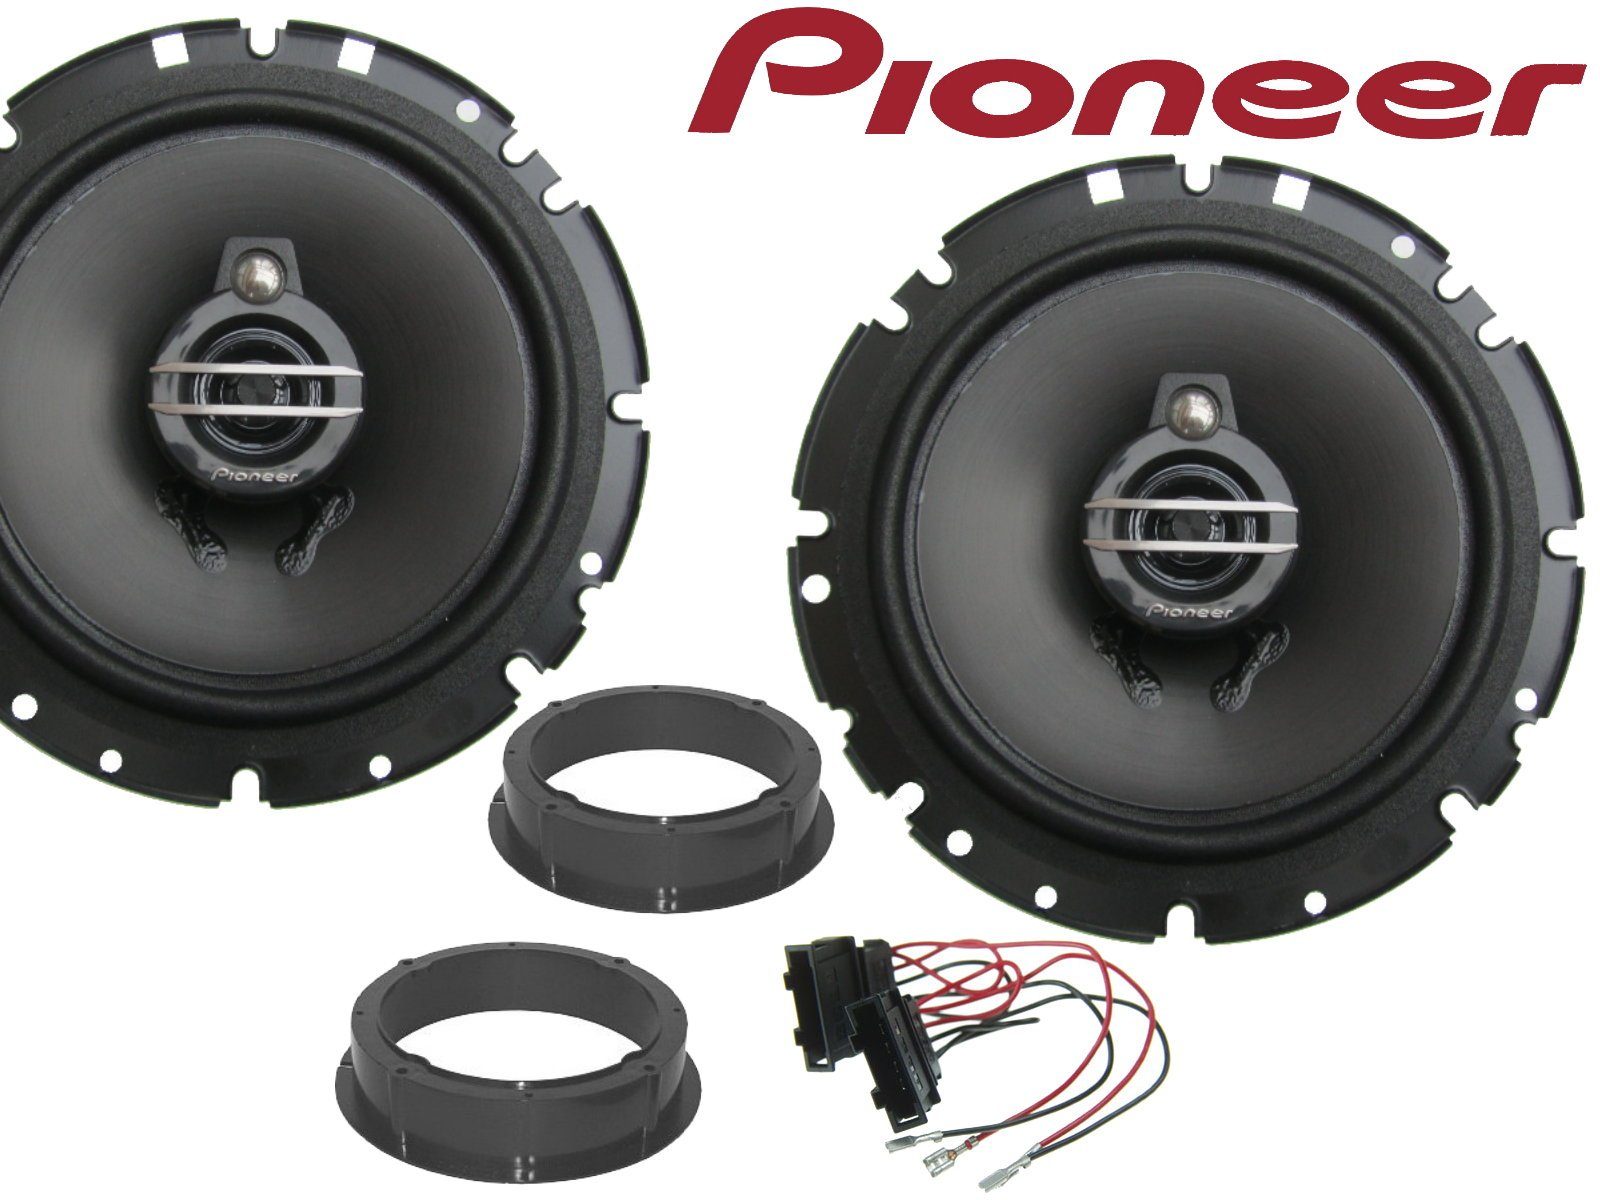 DSX Pioneer 3Wege passend für Seat Altea XL Bj 04-15 Auto-Lautsprecher (40 W)